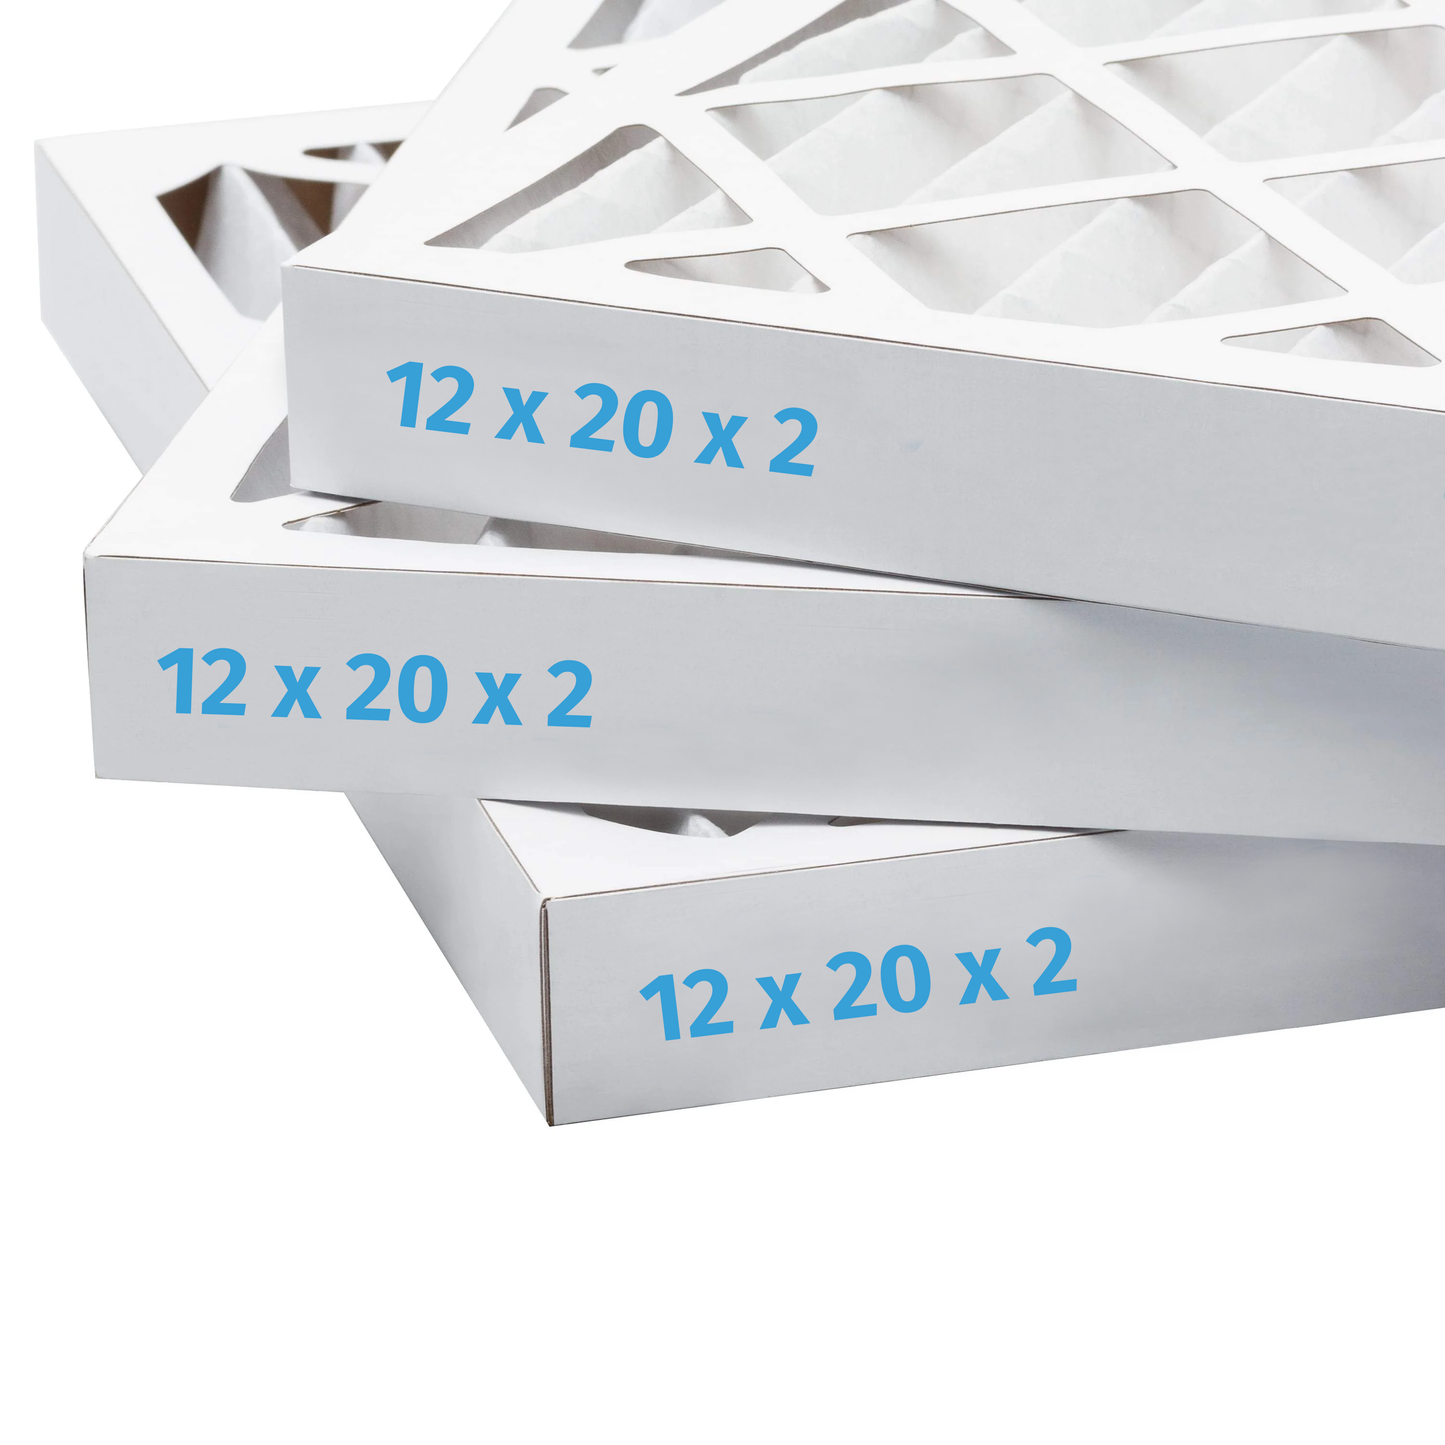 12x20x2 Air Filter - AC Furnace Filter